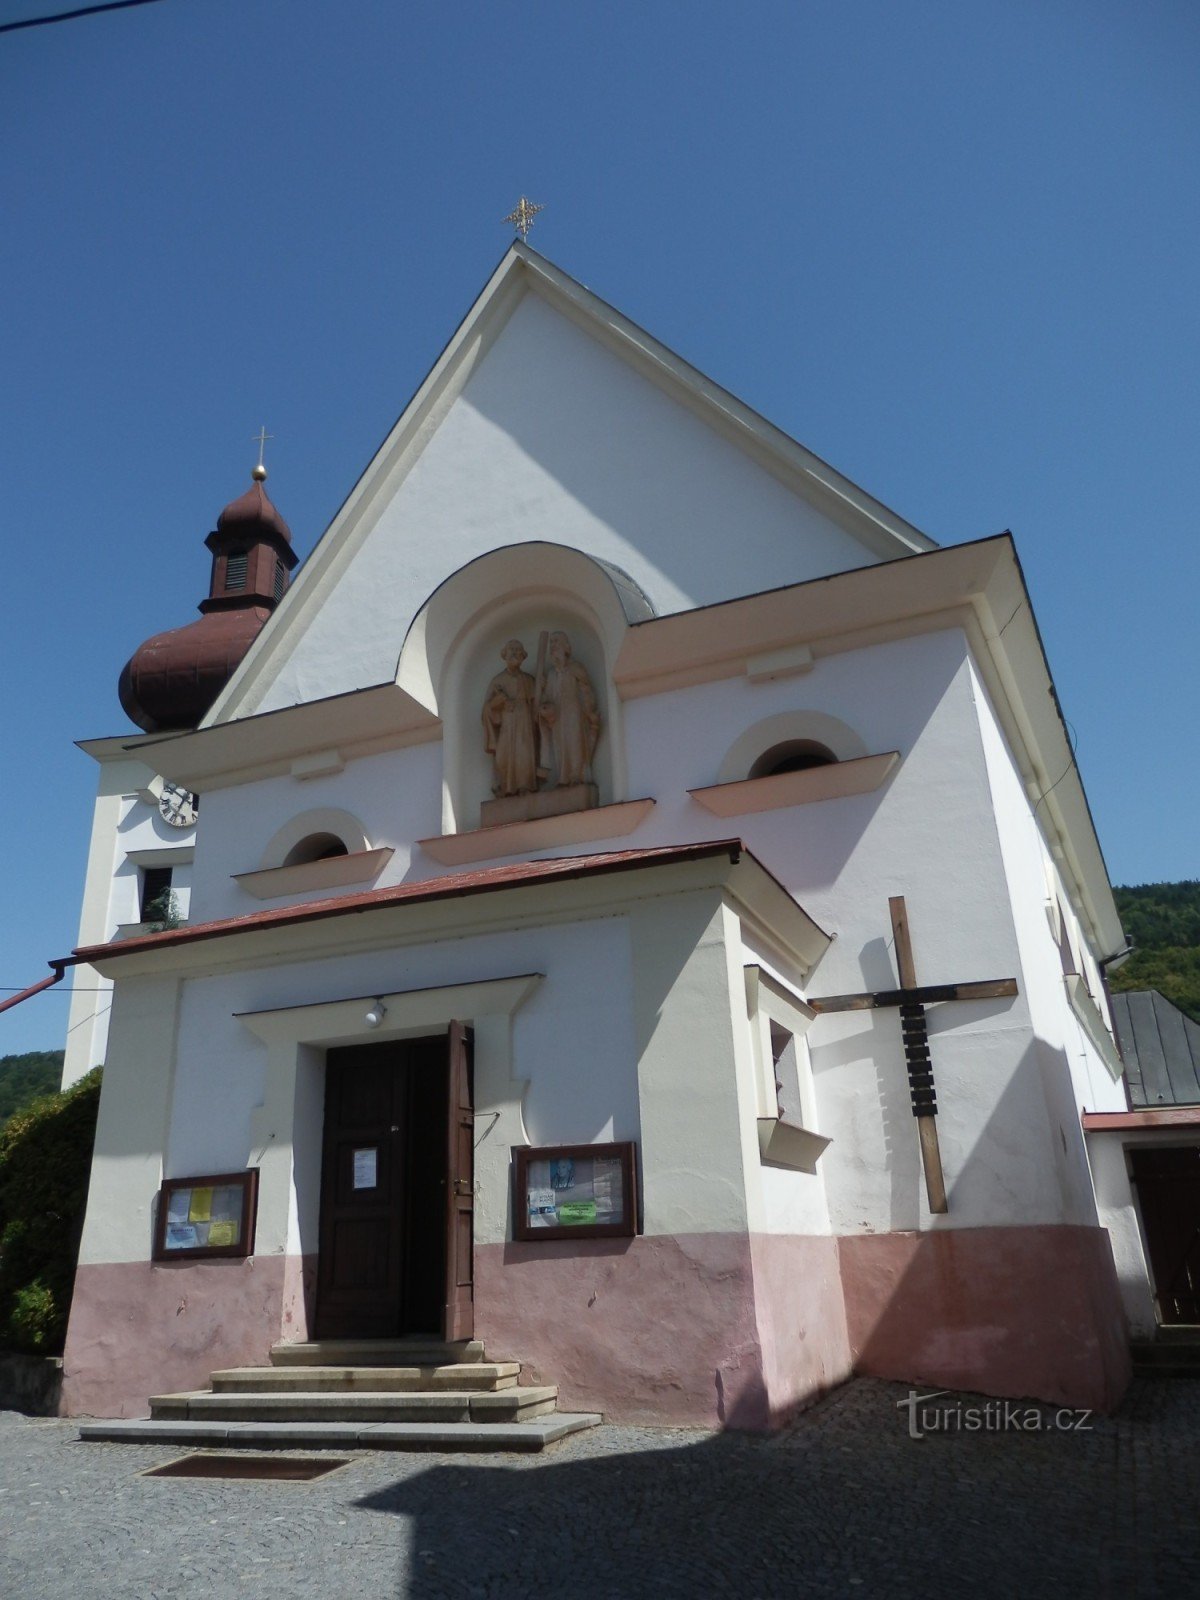 Church of St. Peter and Paul in Štěpánov nad Svratkou